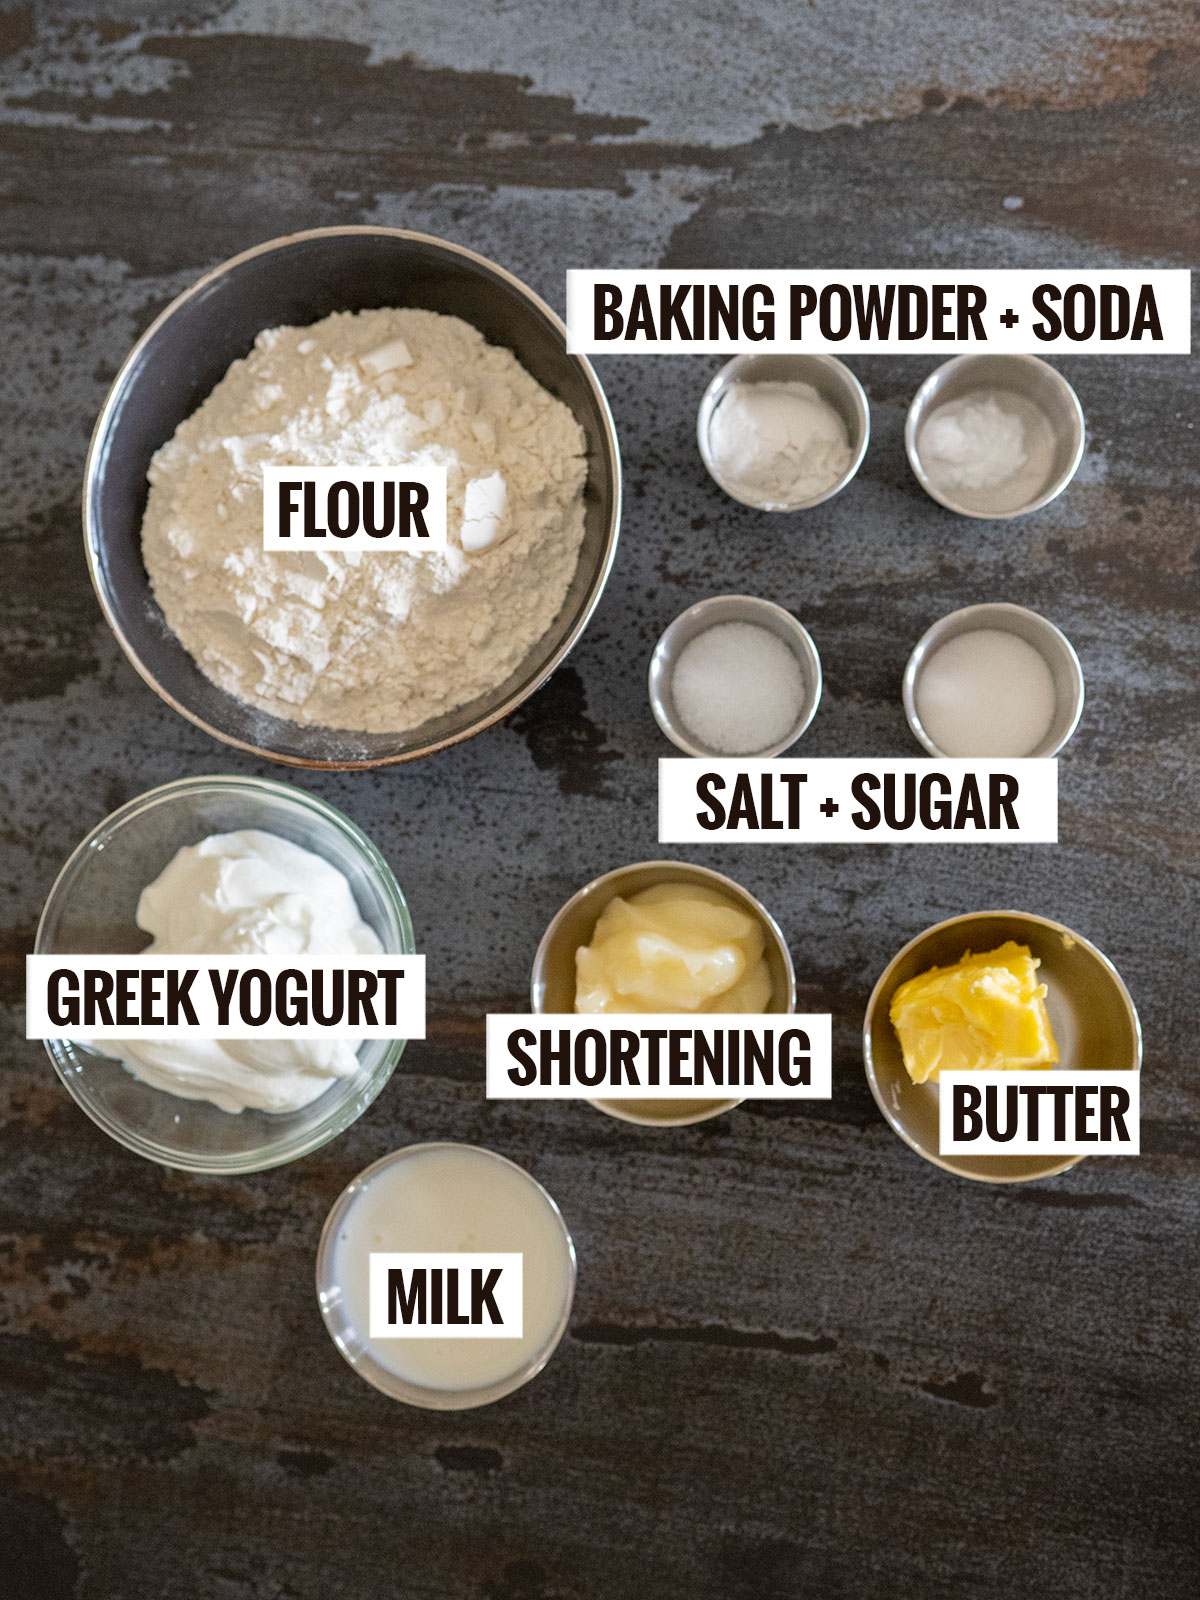 biscuit ingredients: flour, baking powder and soda, salt, sugar, Greek yogurt, milk, shortening, butter.